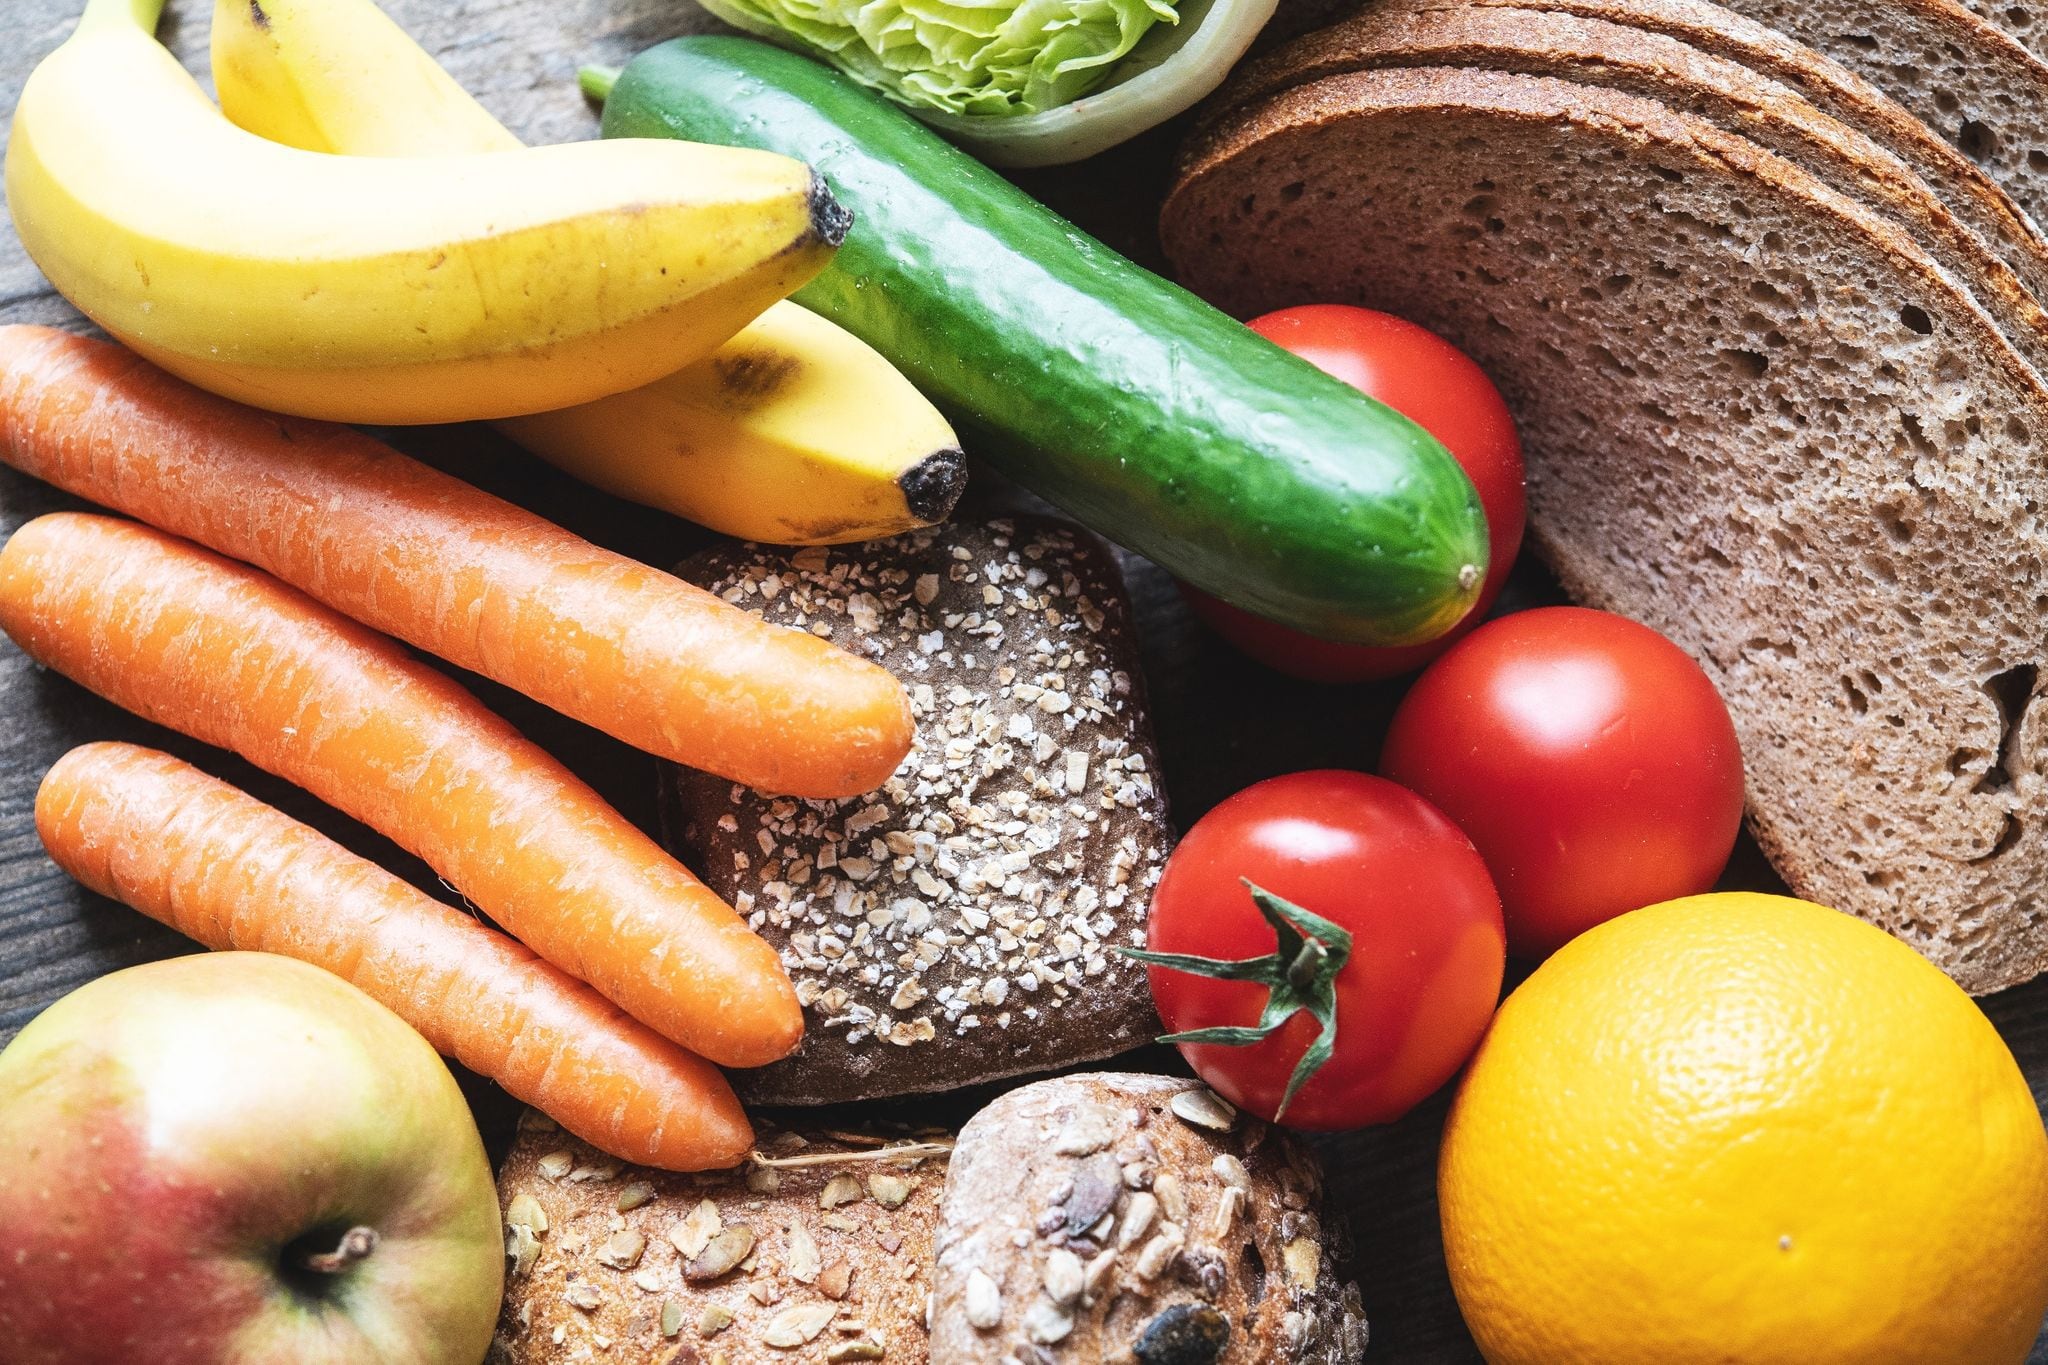 Para perder peso conviene una dieta que incluya mucha verdura, cereales integrales y poca azúcar. Foto: Robert Günther/dpa